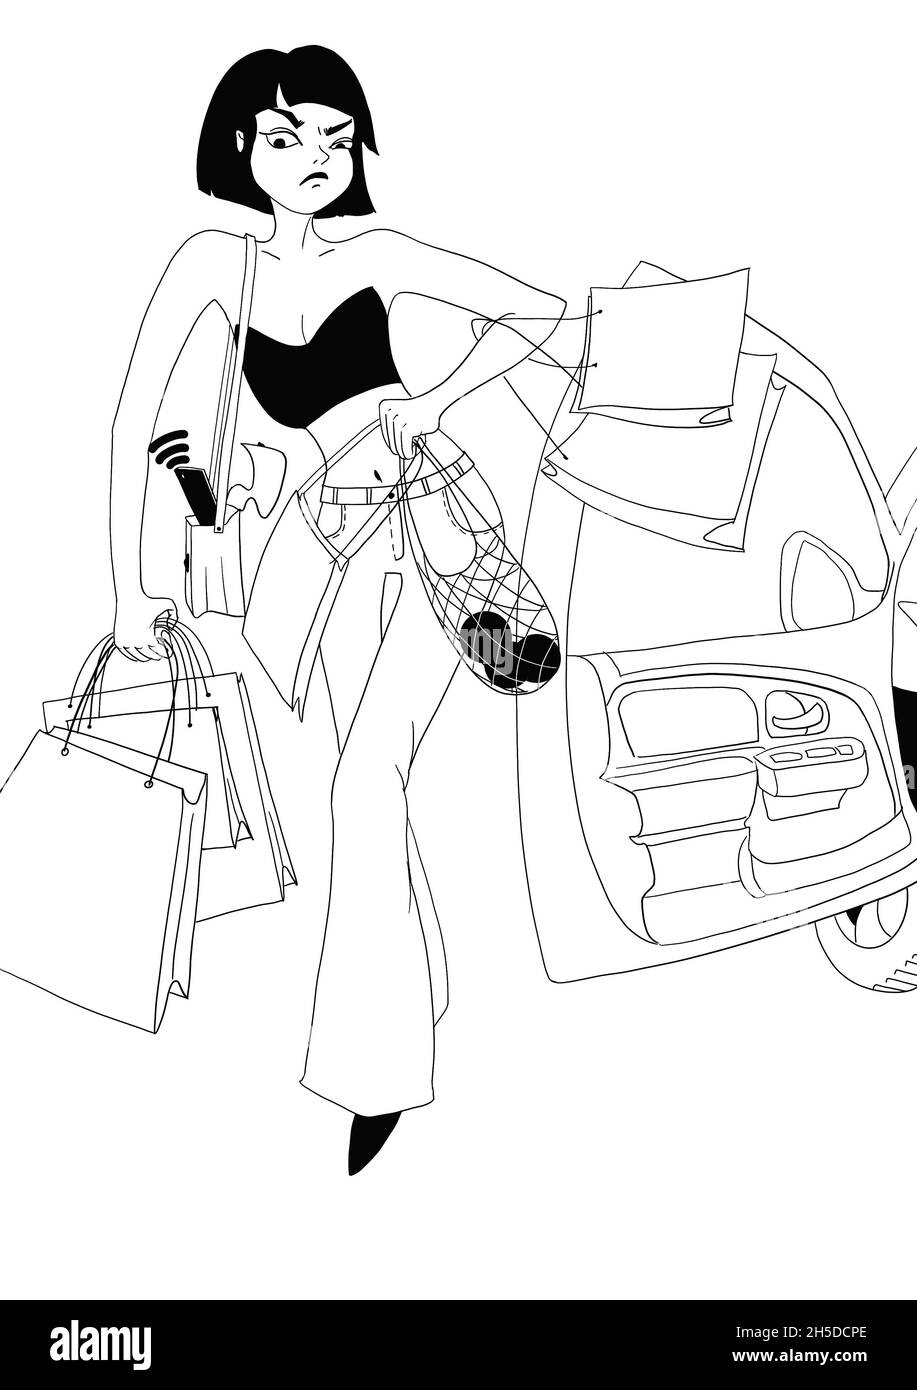 Junge Frau mit Einkaufstaschen und Taschen nach dem Einkaufen steigt aus dem Auto. Plötzlicher unbequemer Anruf. Lustige Lifestyle-Situation. Konturillust Stockfoto